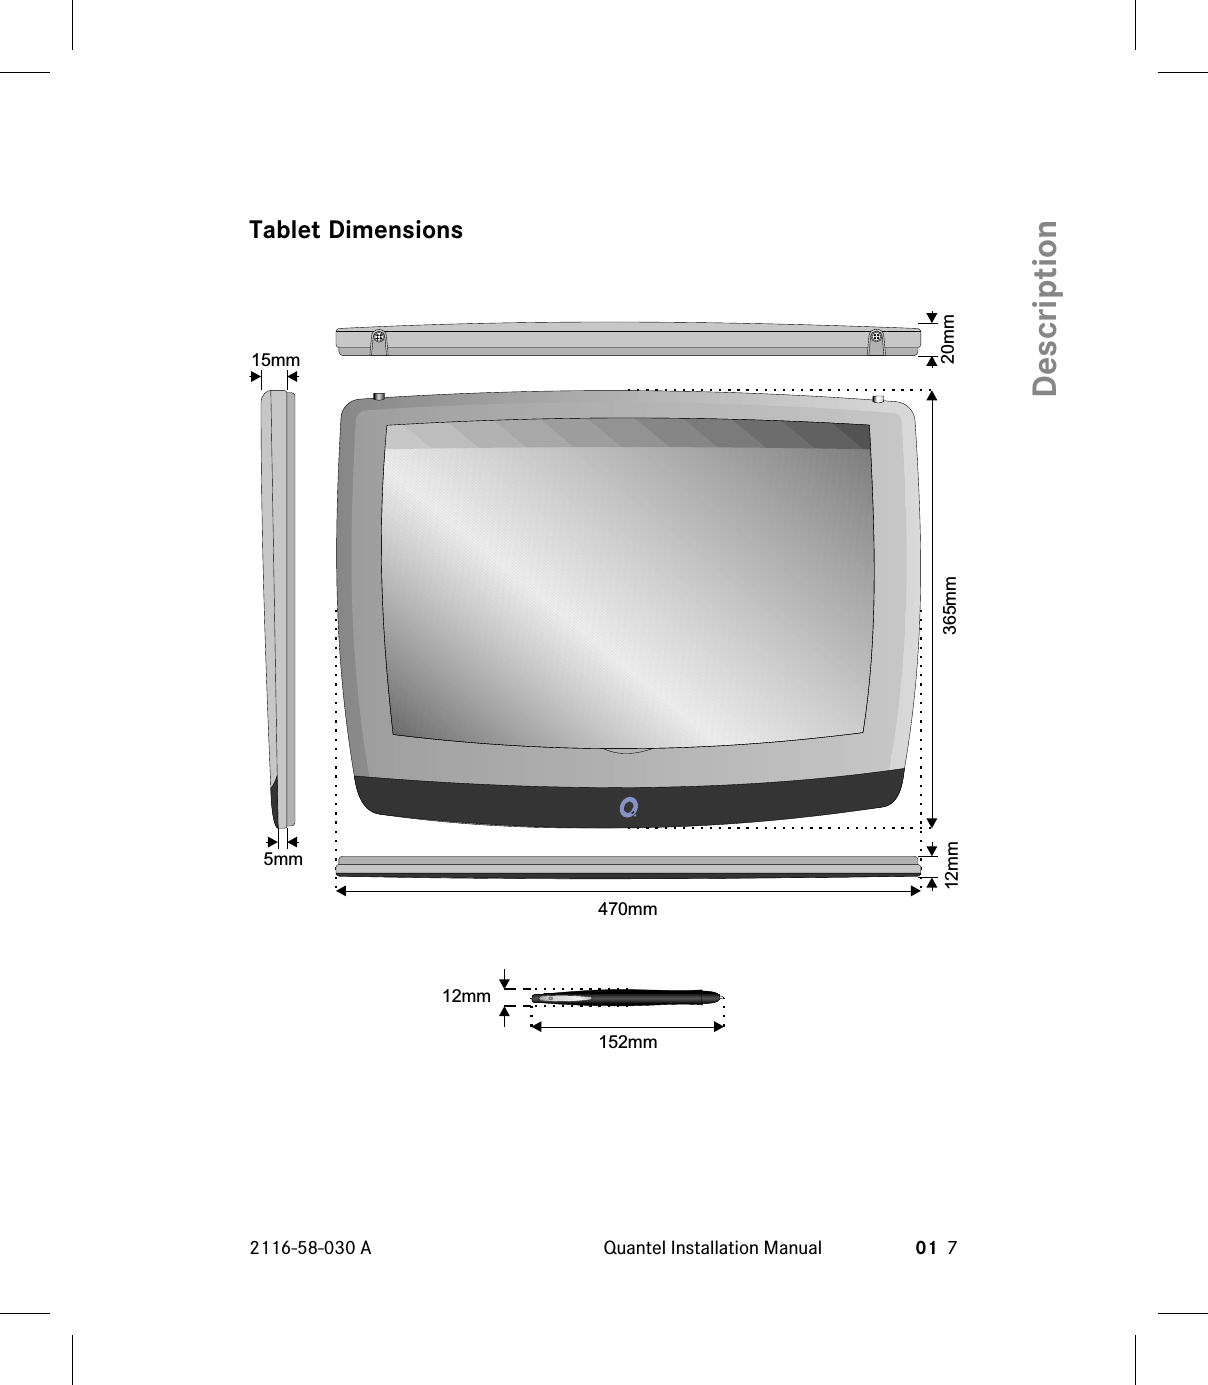 Tablet Dimensions2116-58-030 A Quantel Installation Manual 01 7Description365mm470mm12mm5mm15mm20mm152mm12mm